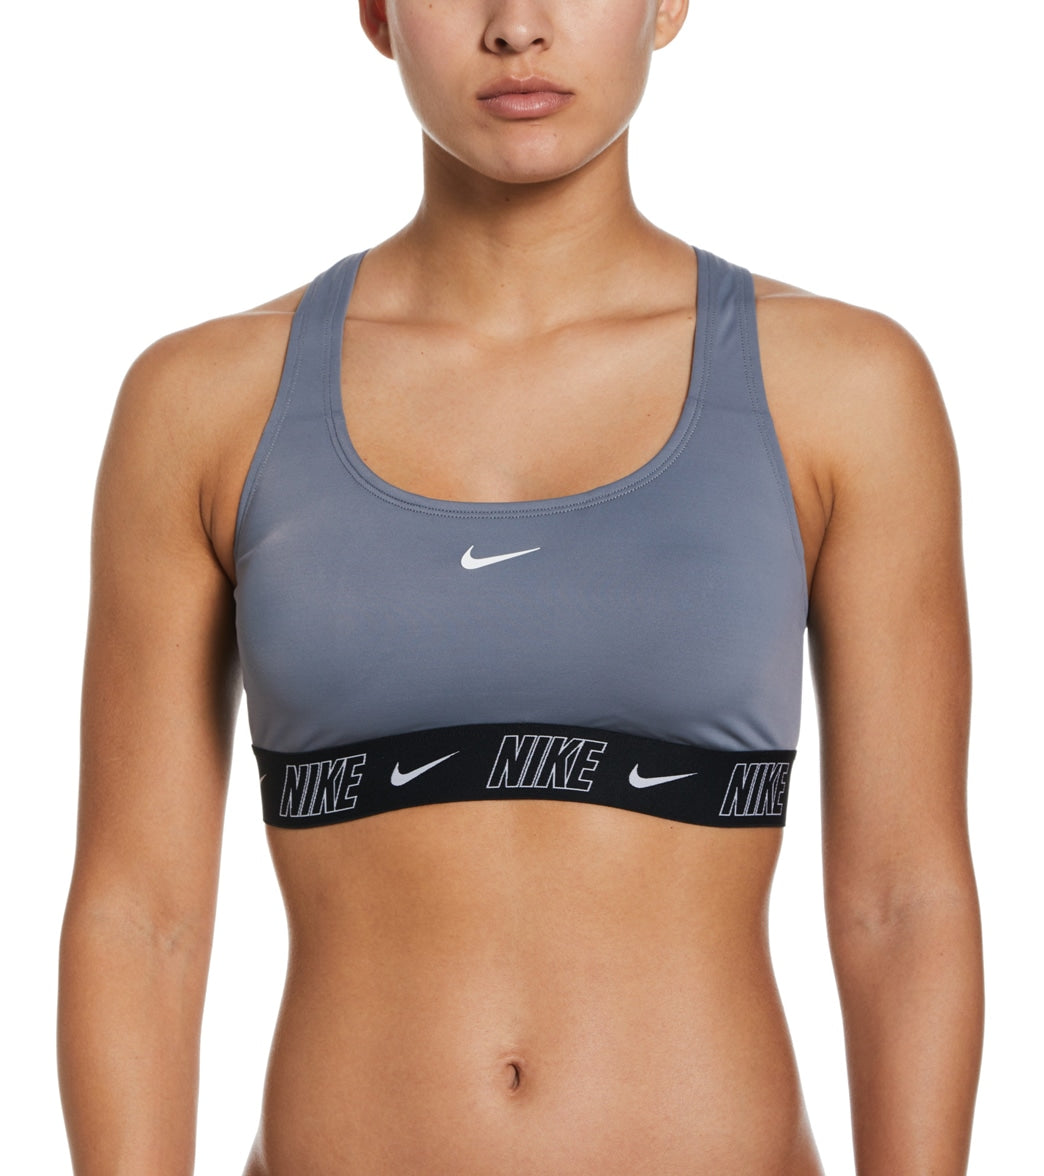 Nike Women's Racerback Bikini Top at